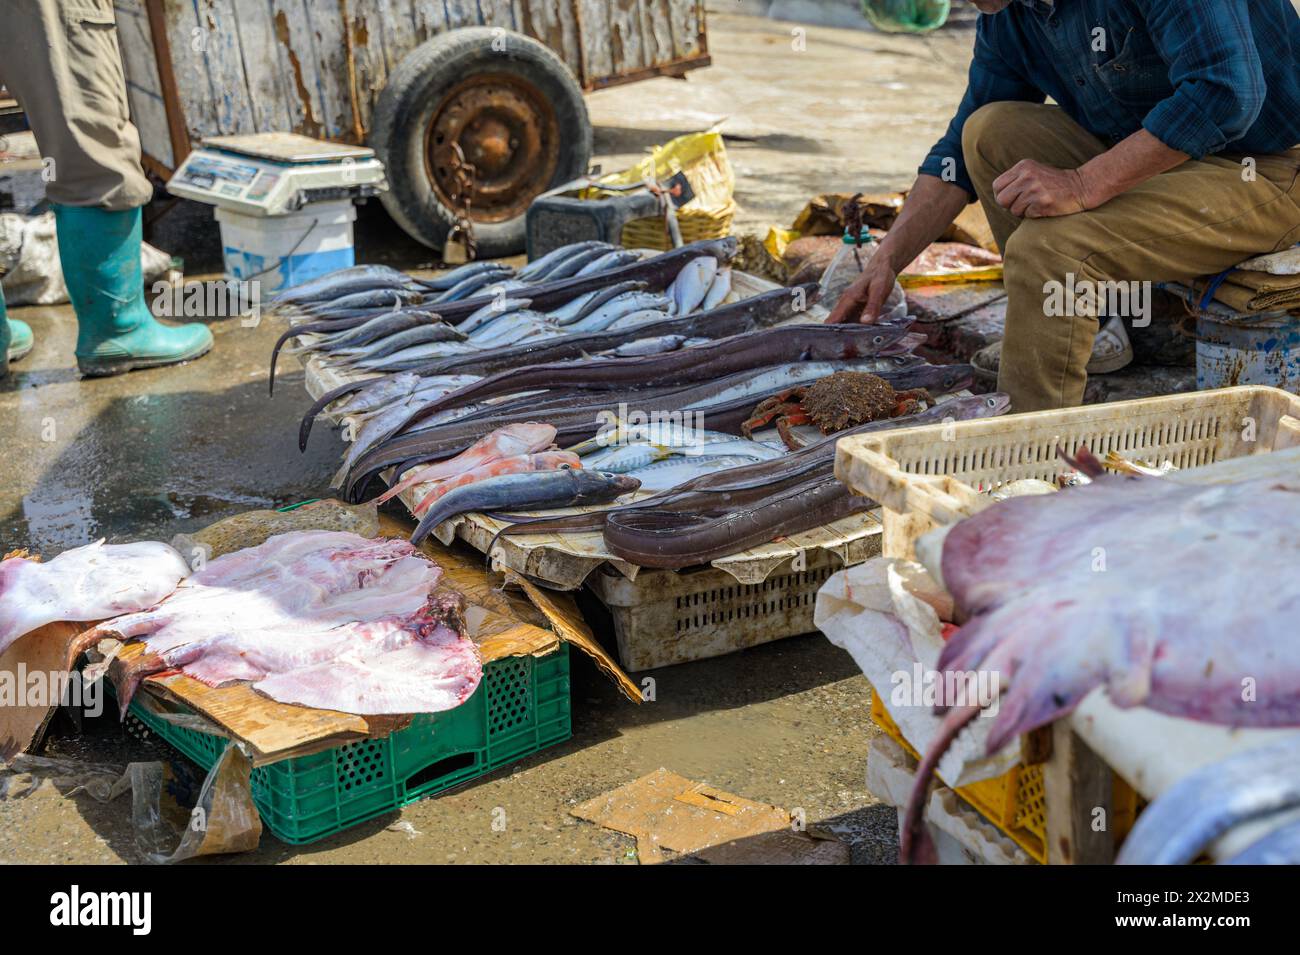 Un vivace mercato del pesce marocchino con una varietà di pesce fresco preparato in vendita, mentre venditori irriconoscibili e ritagliati interagiscono con i clienti in mezzo a loro Foto Stock